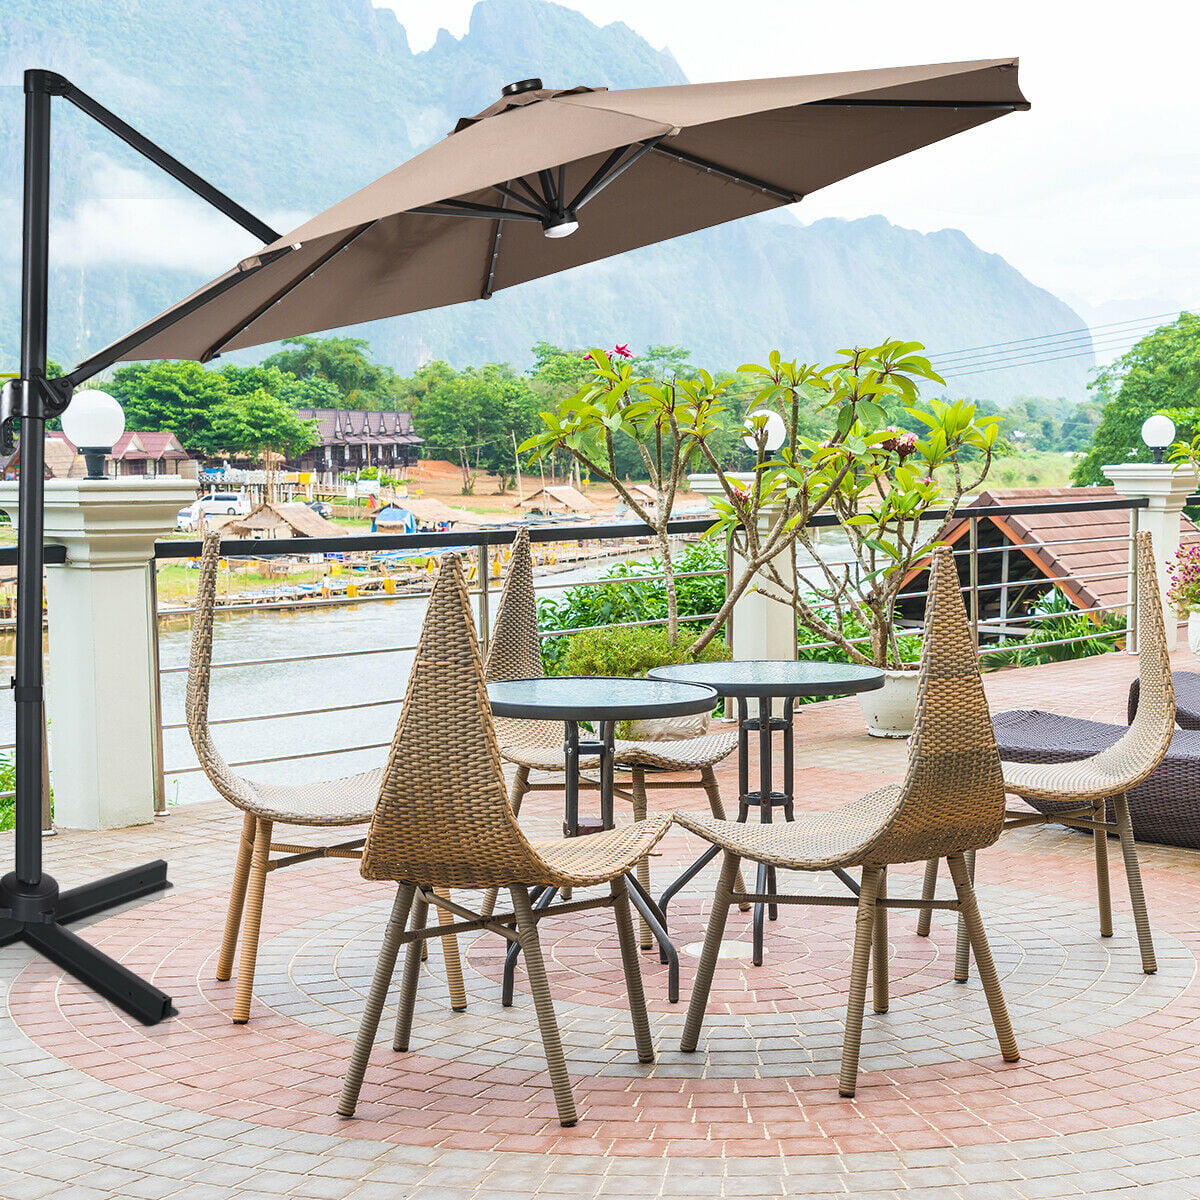 2.7Meter Garden Parasol Sun Shade Outdoor Patio Umbrella Cantilever Crank Multi 